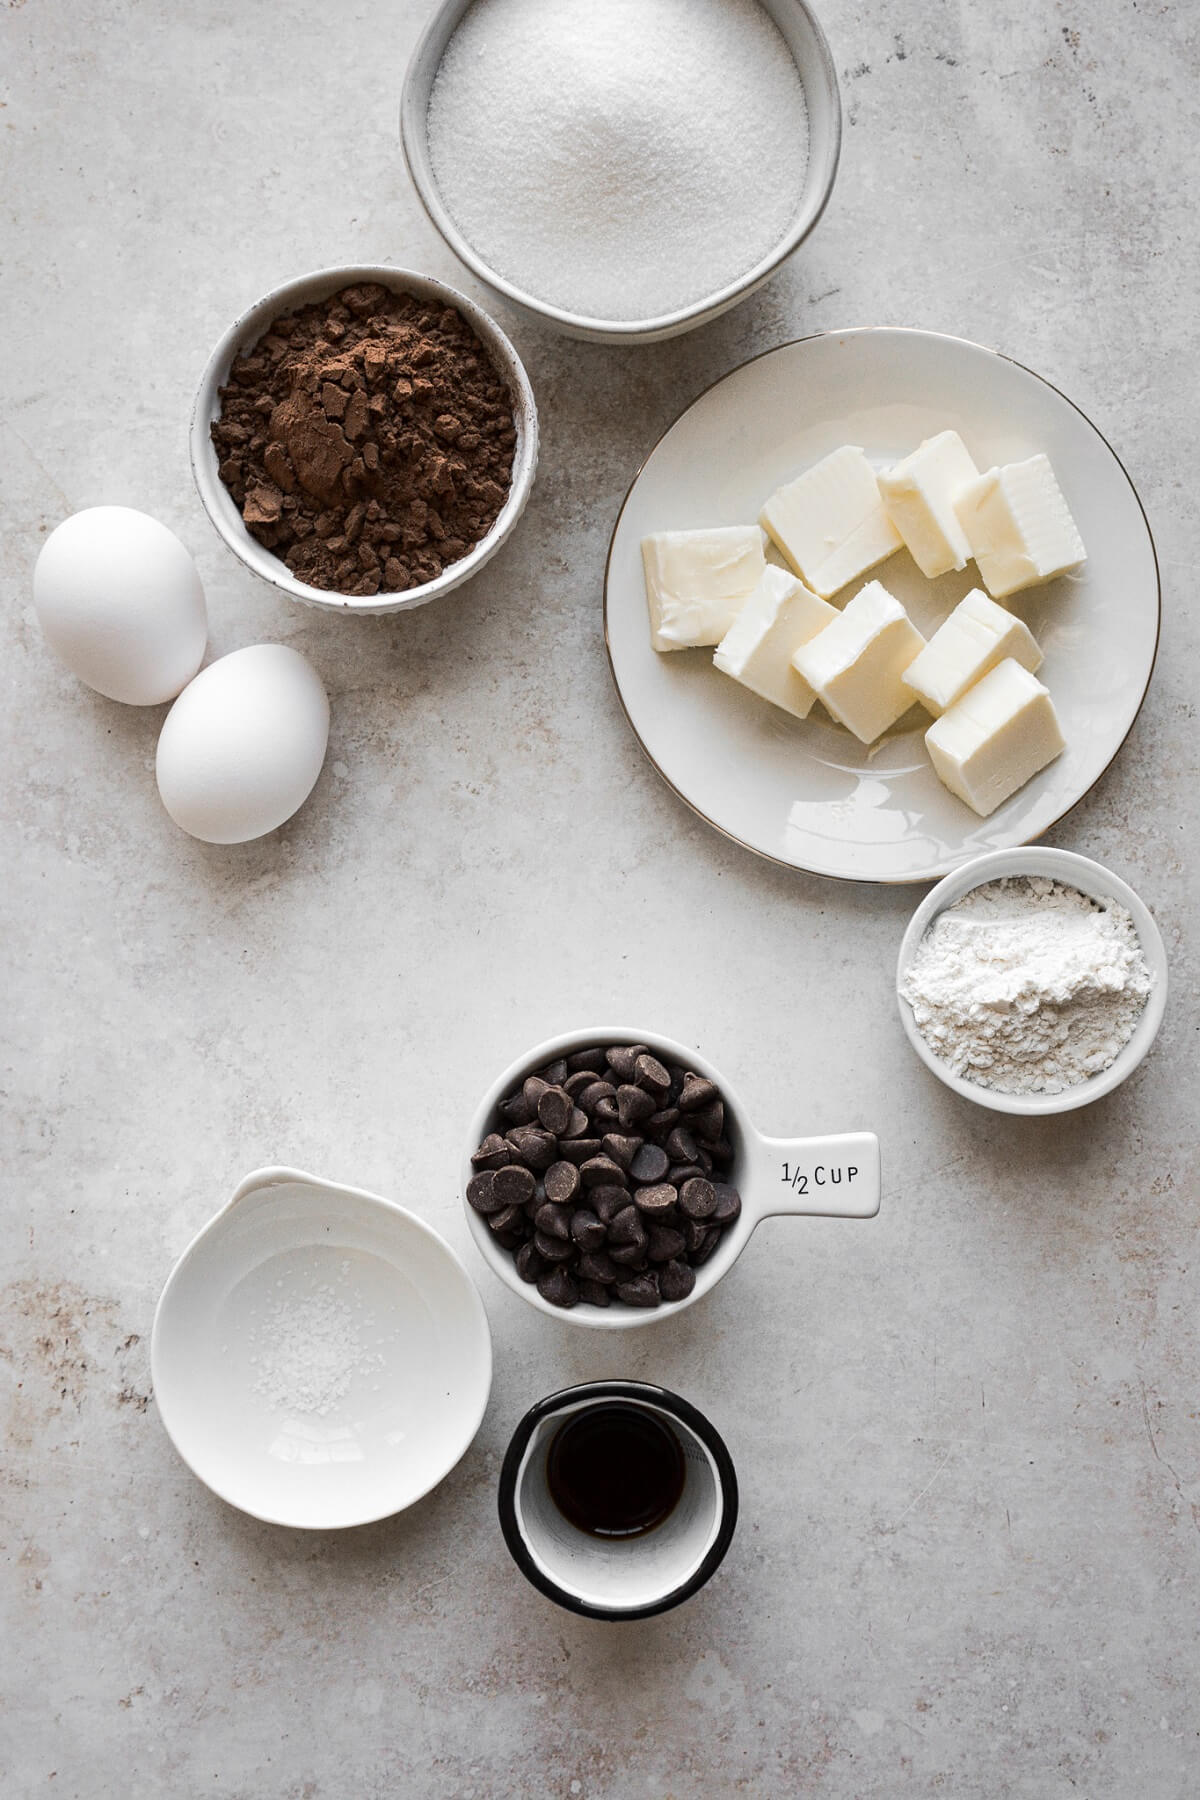 Ingredients for making fudge brownies.